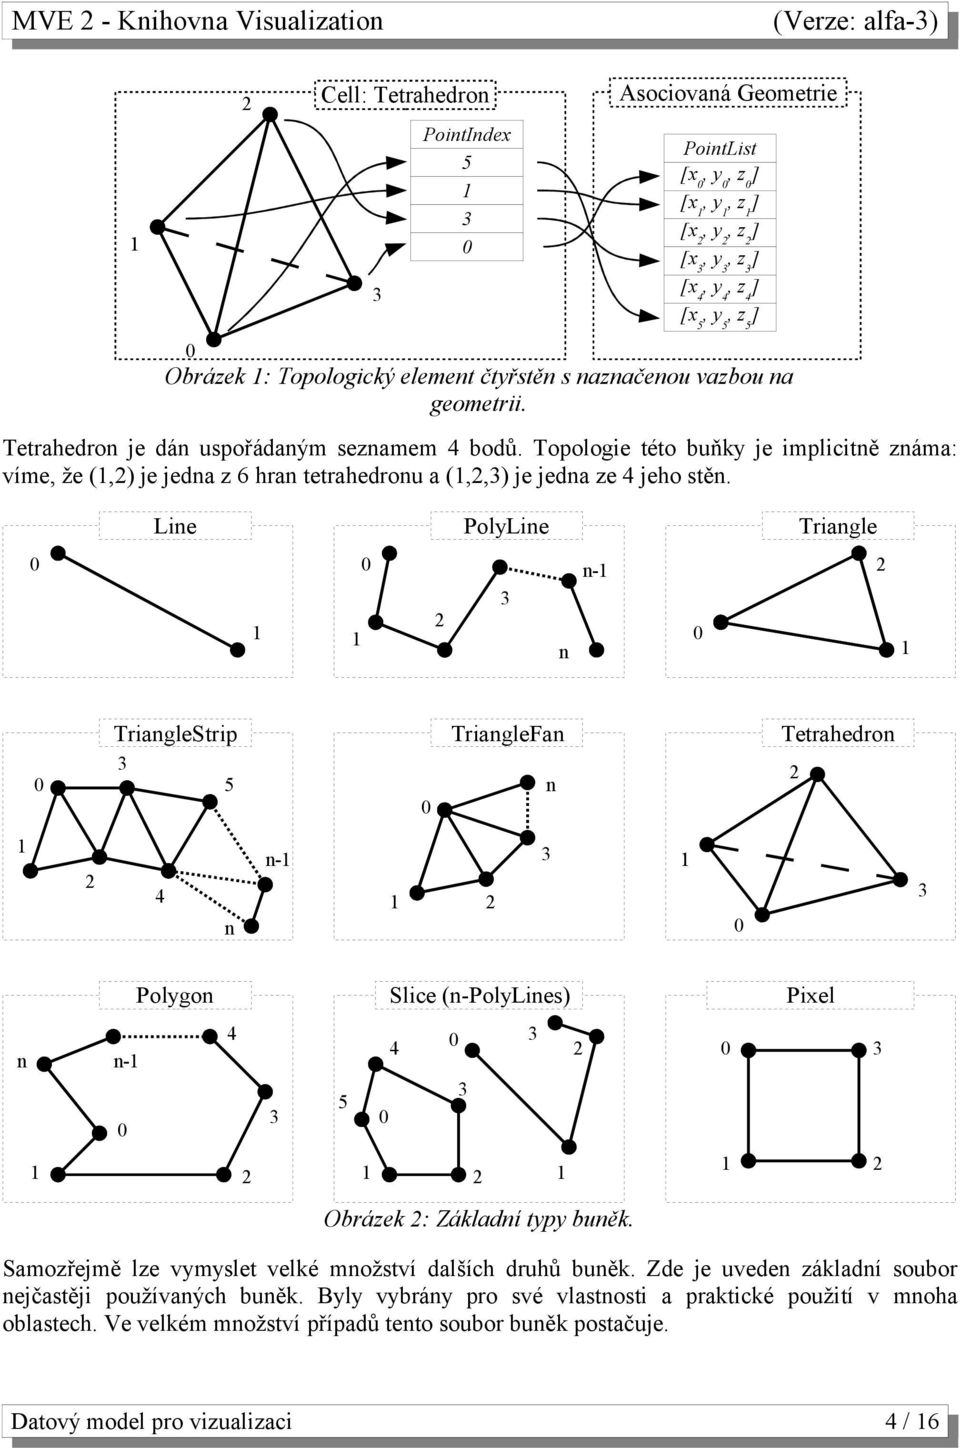 Line PolyLine Triangle 2 n n- 2 TriangleStrip 5 TriangleFan n Tetrahedron 2 2 4 n n- 2 Polygon Slice (n-polylines) Pixel n n- 4 5 4 2 2 2 2 Obrázek 2: Základní typy buněk.